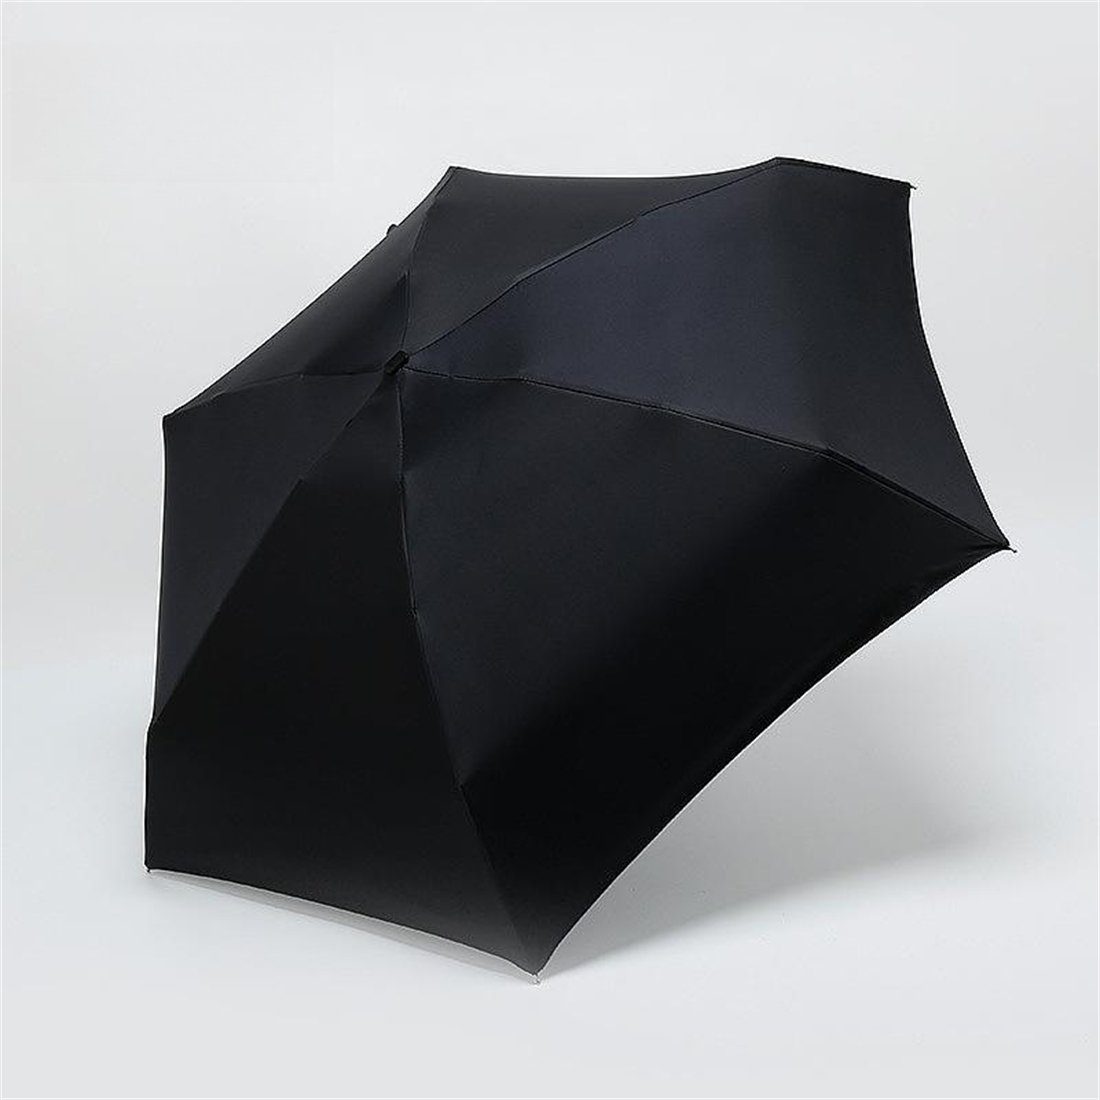 Sonne YOOdy~ für sonnenschirm manual Regen für UV-Schutz damen Sonnenschutz, Taschenregenschirm unterwegs klein schützt vor Schwarz small und winzig Taschenschirme